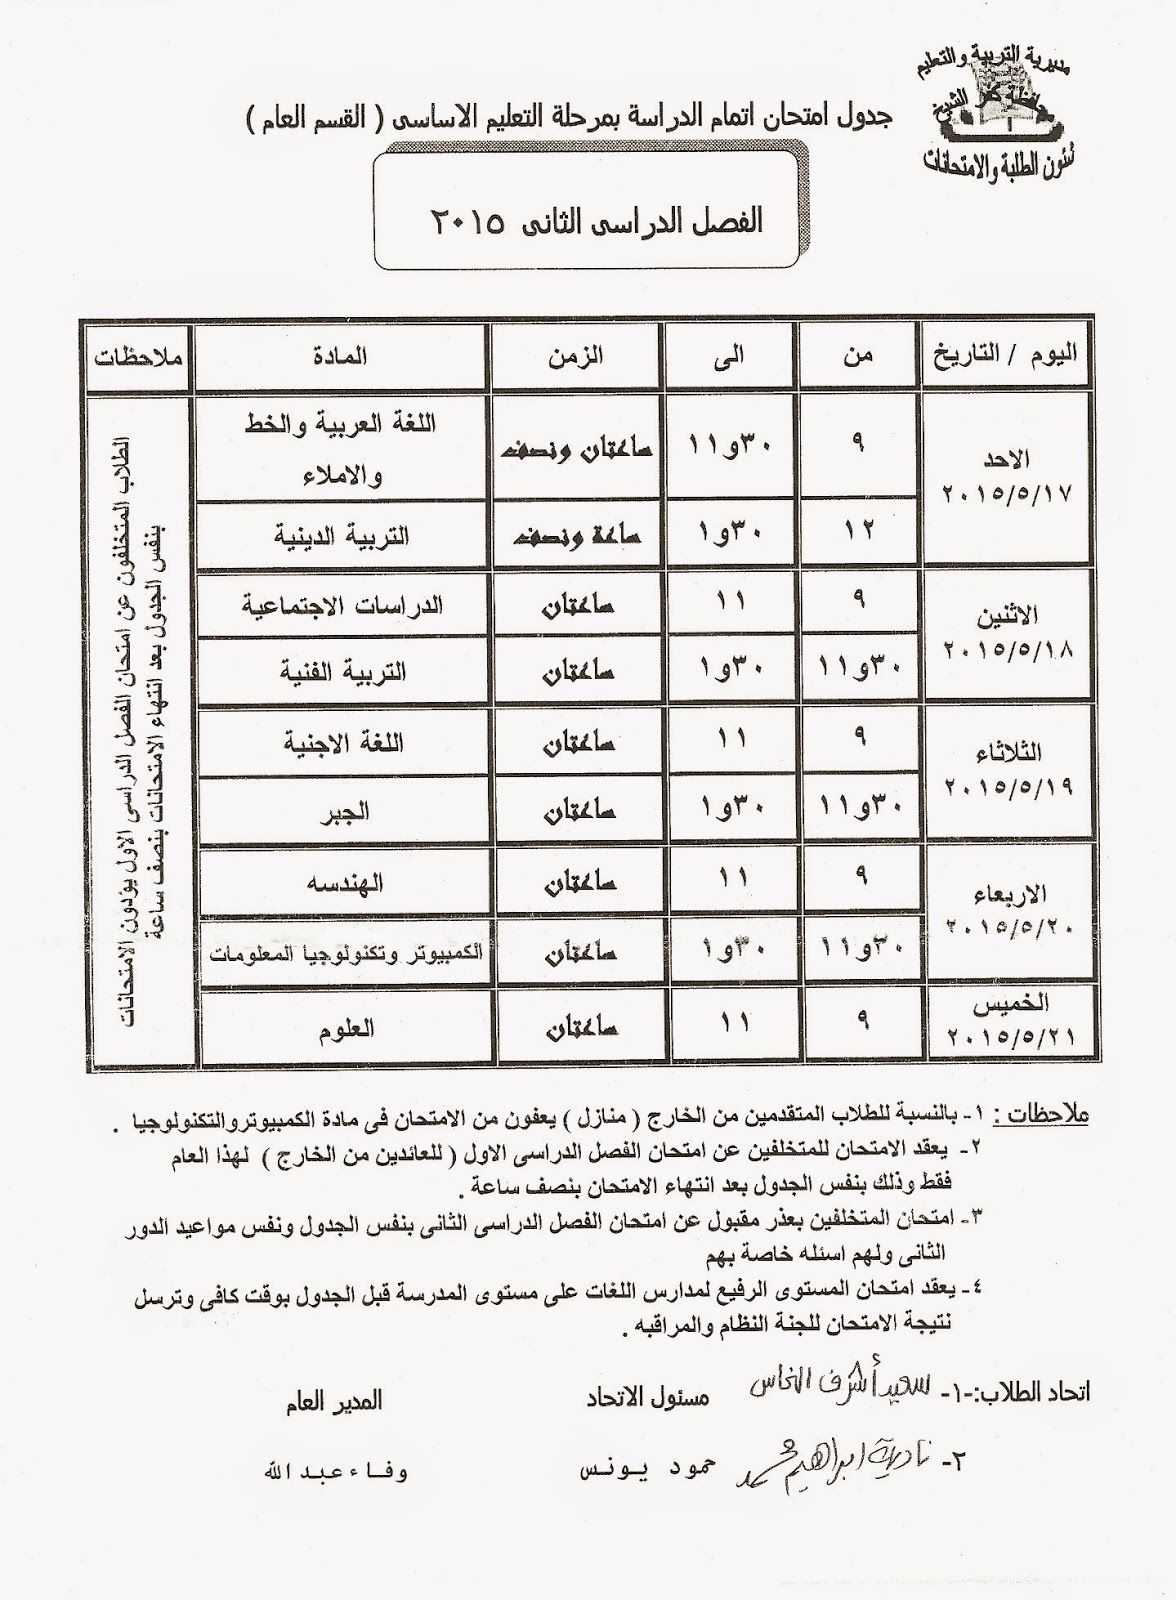 جداول كل فرق كفر الشيخ أخر العام2015 امتحانات ابتدائى و إعدادى و ثانوى